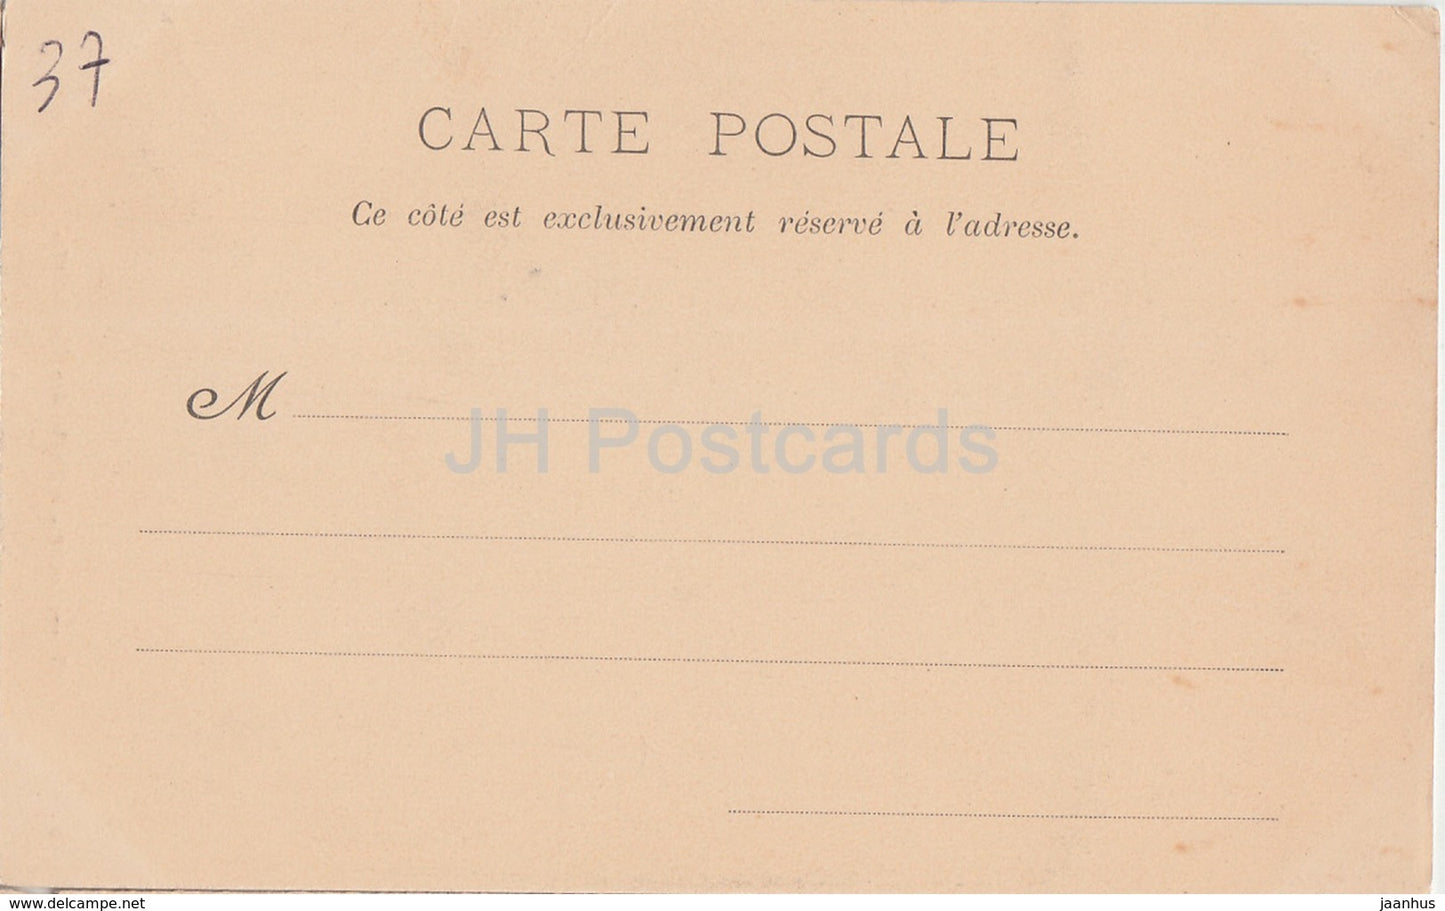 Loches - Porte des Cordeliers - Schloss - 107 - alte Postkarte - Frankreich - unbenutzt